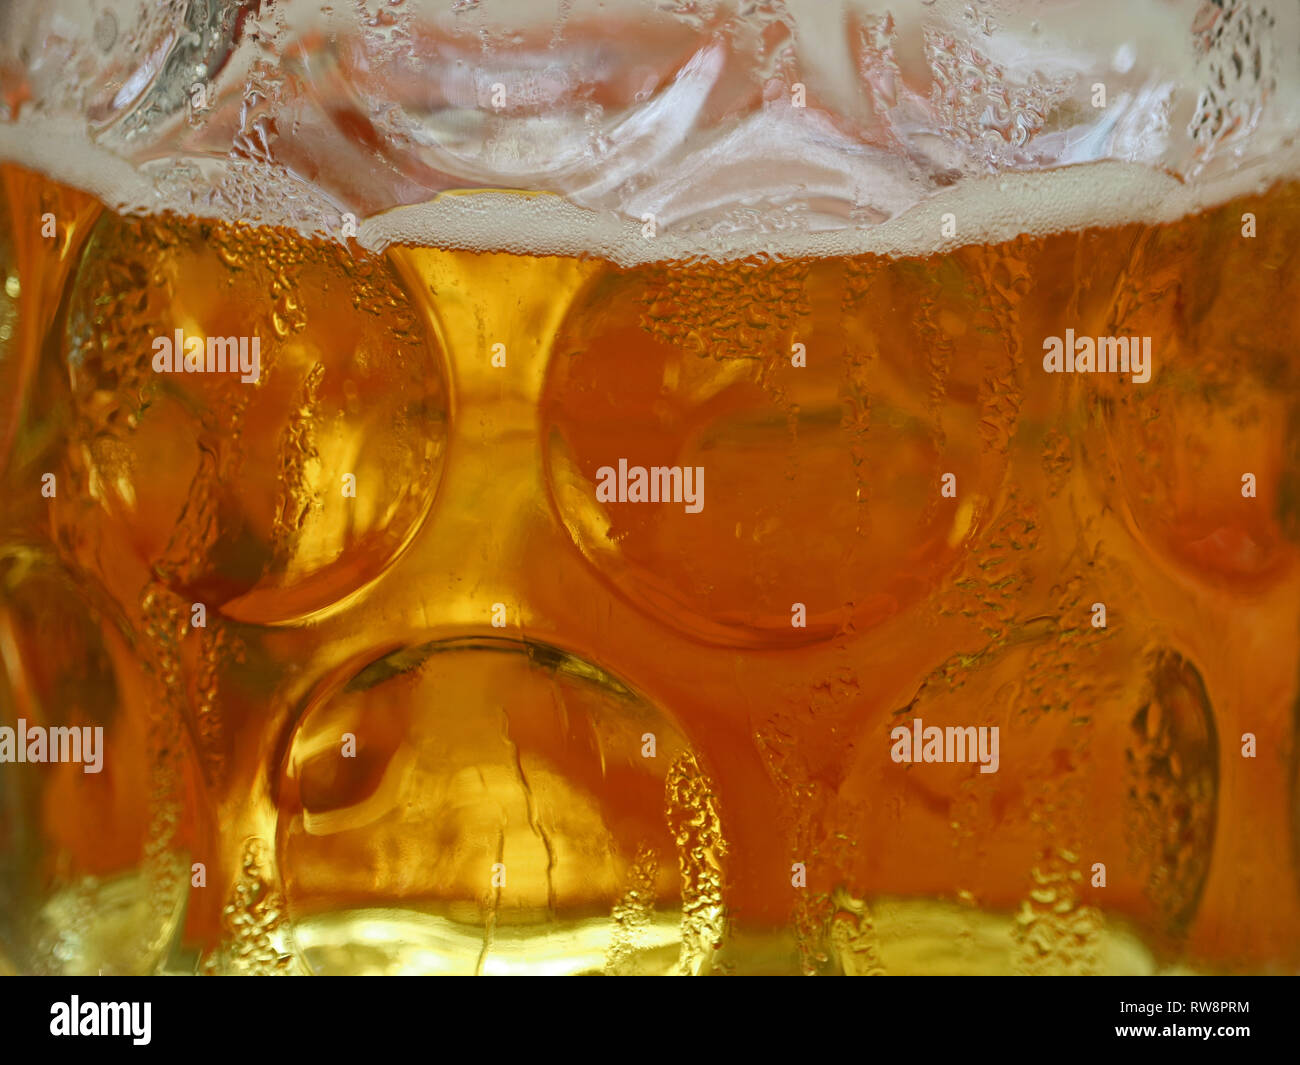 Chiusura del freddo fresca birra bavarese, 1 litro di birra, tazza di vetro, birra stein Foto Stock